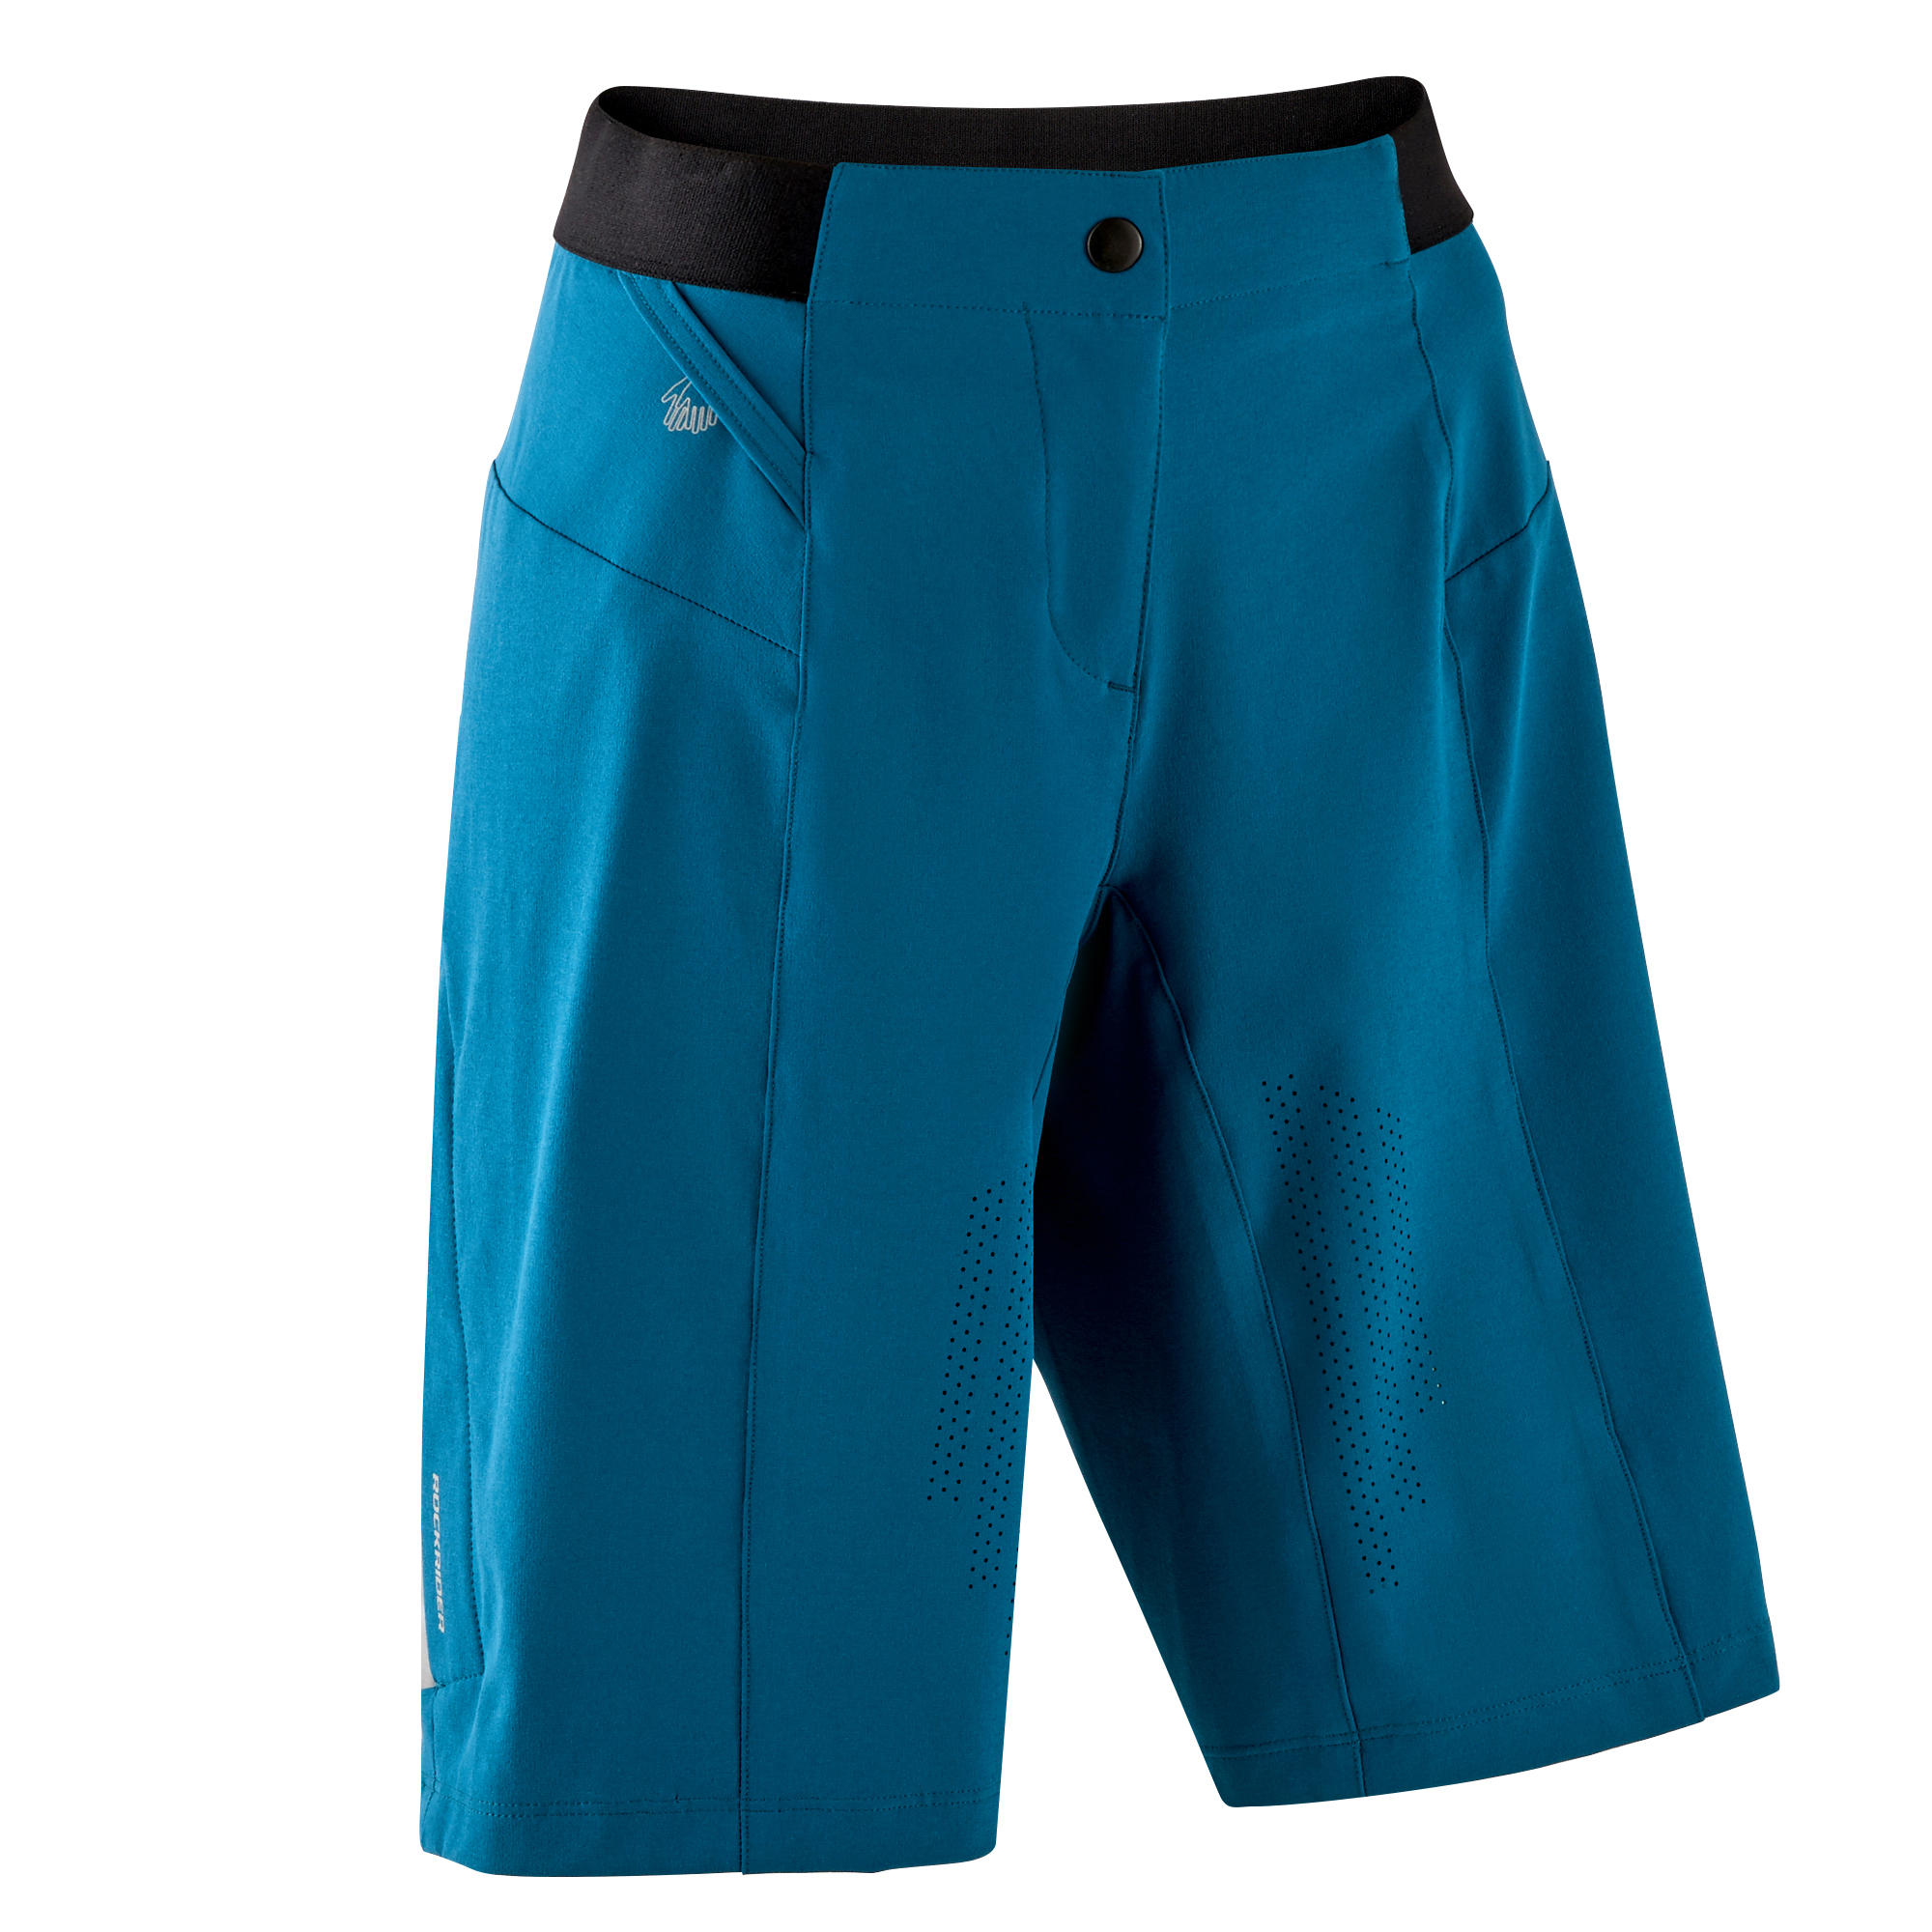 Women's Mountain Bike Shorts EXP 700 - Turquoise 9/11